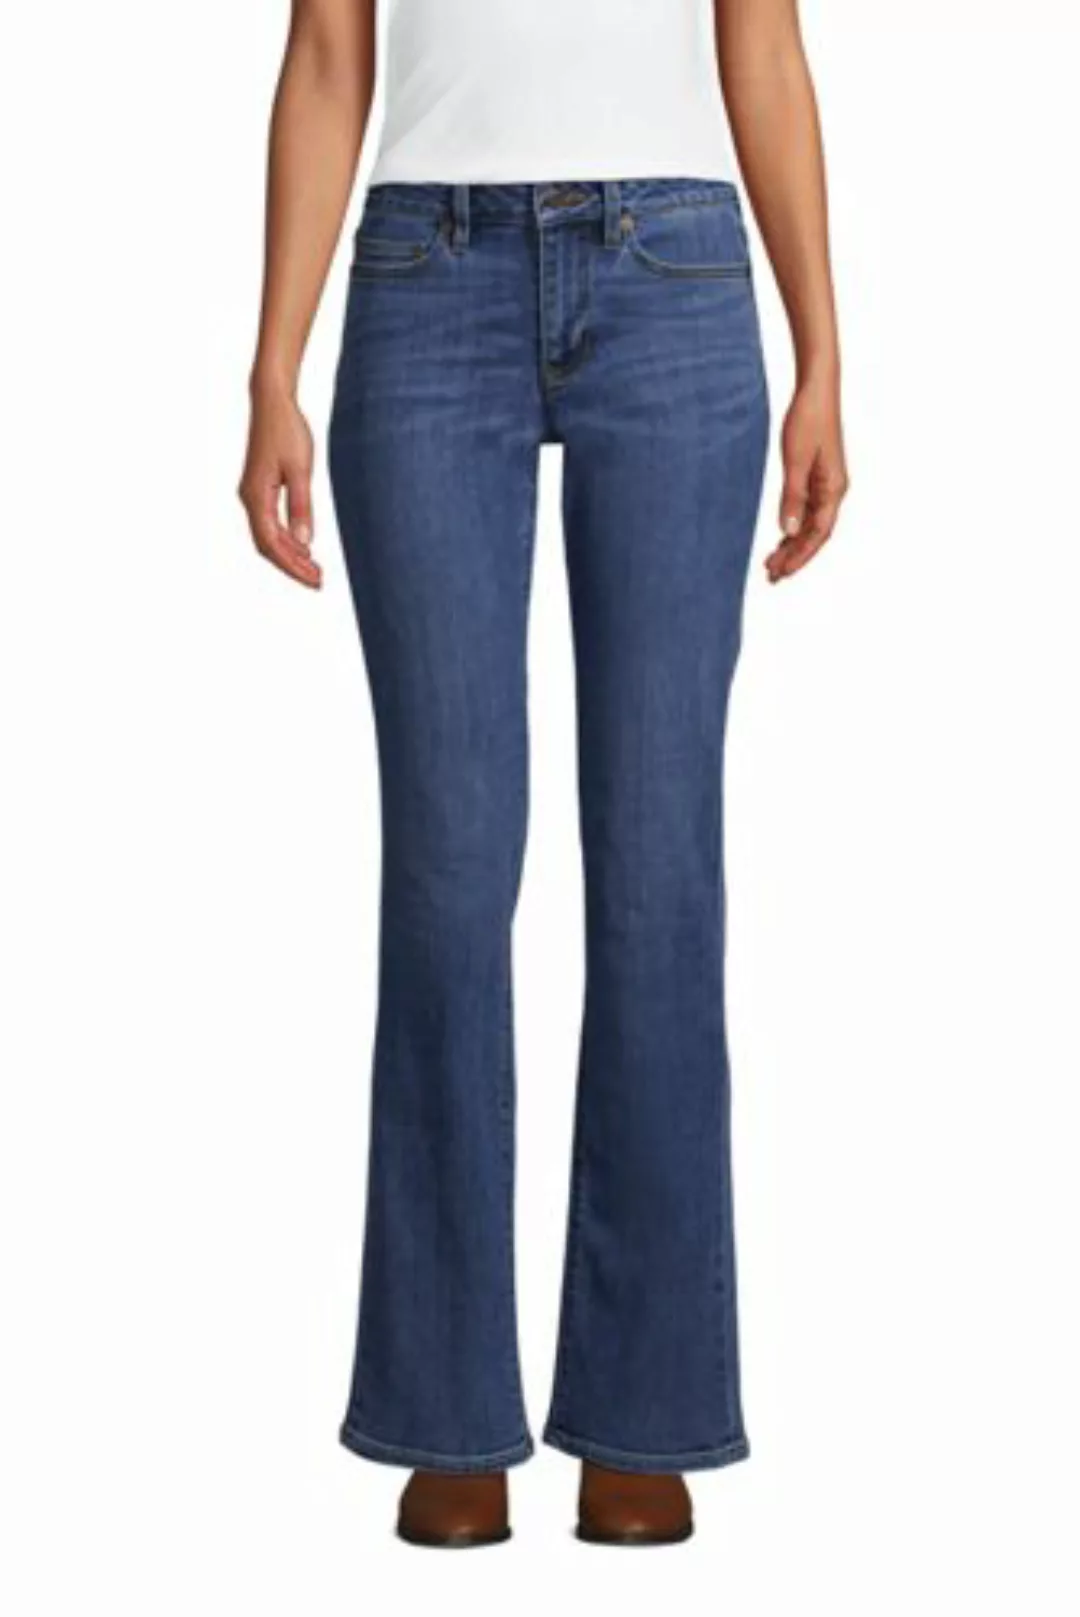 Bootcut Öko-Jeans Mid Waist, Damen, Größe: 42 30 Normal, Blau, Elasthan, by günstig online kaufen